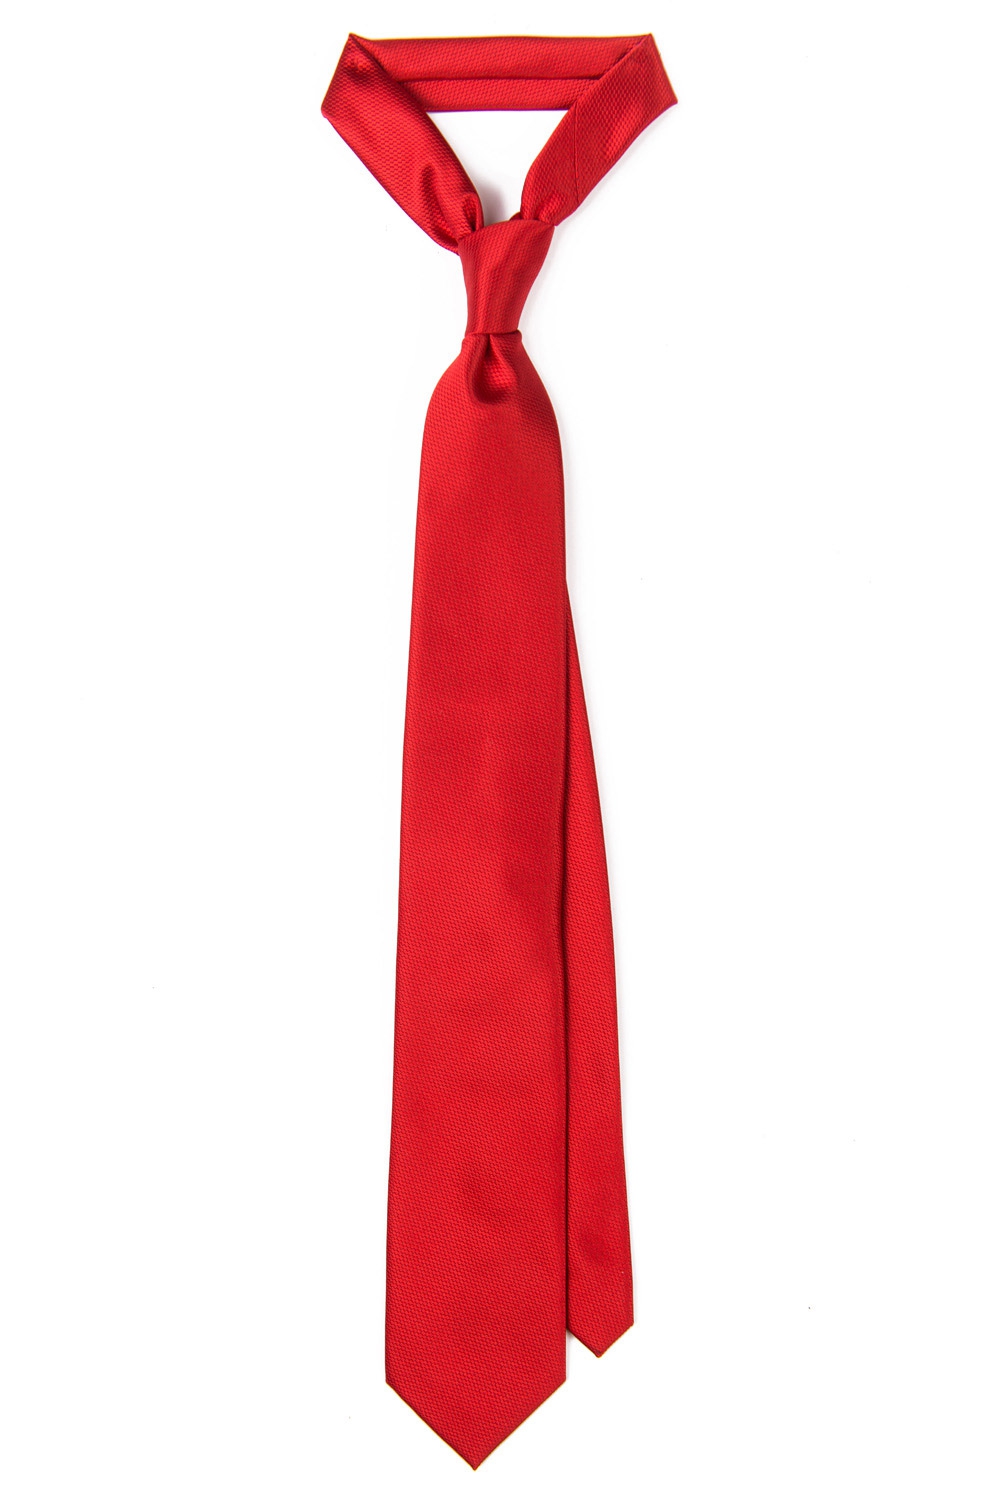 Cravata poliester rosie uni 0